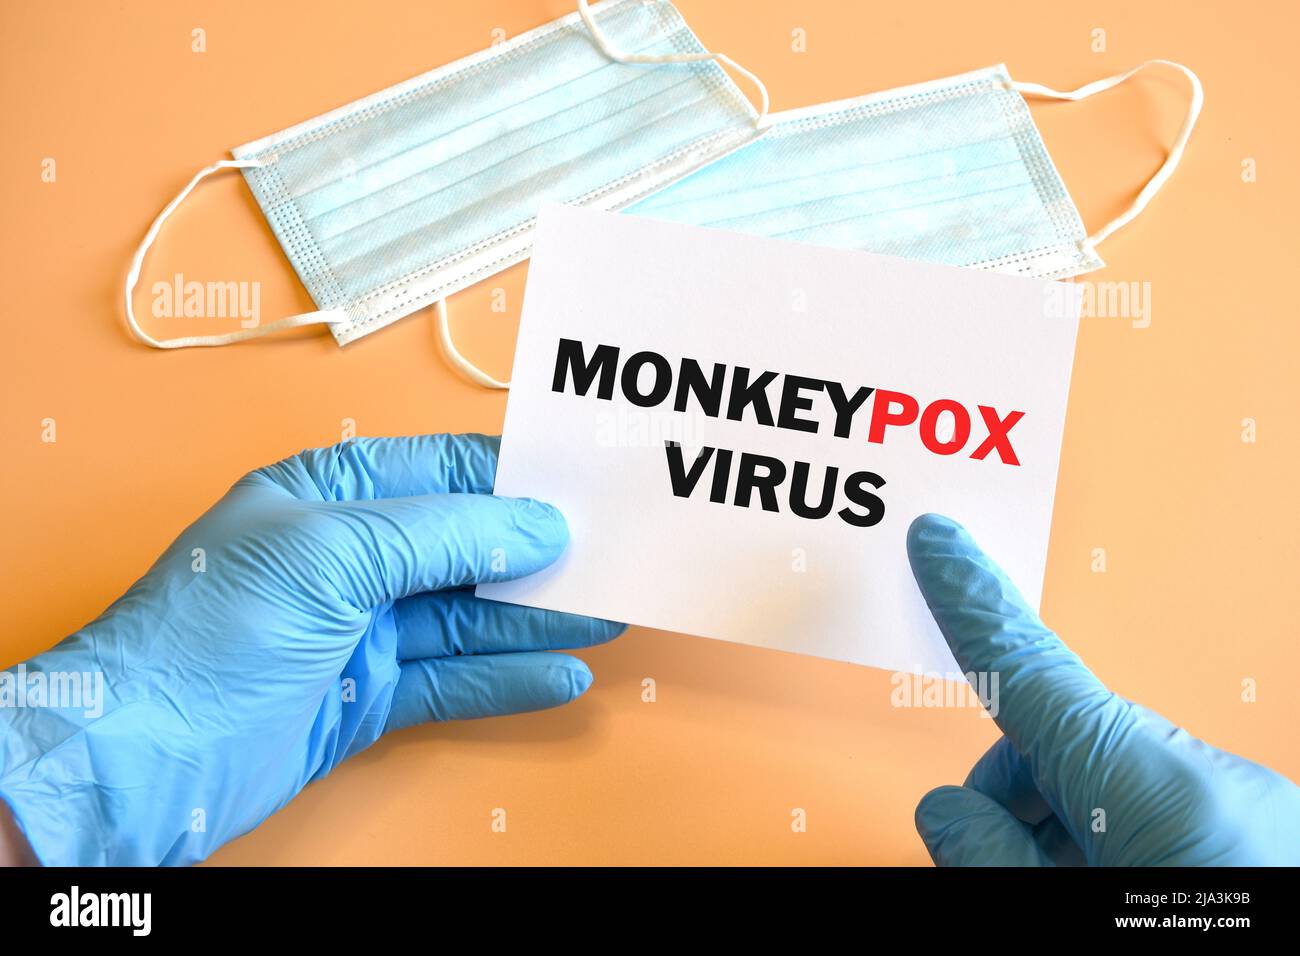 Doktor Hand in blauem Handschuh zeigen monkeypox Virus Wörter auf weißem Papier an. Monkeypox auf weißem Papier. Medizinisches und monkeypox-Virus-Pandemiekonzept. Stockfoto